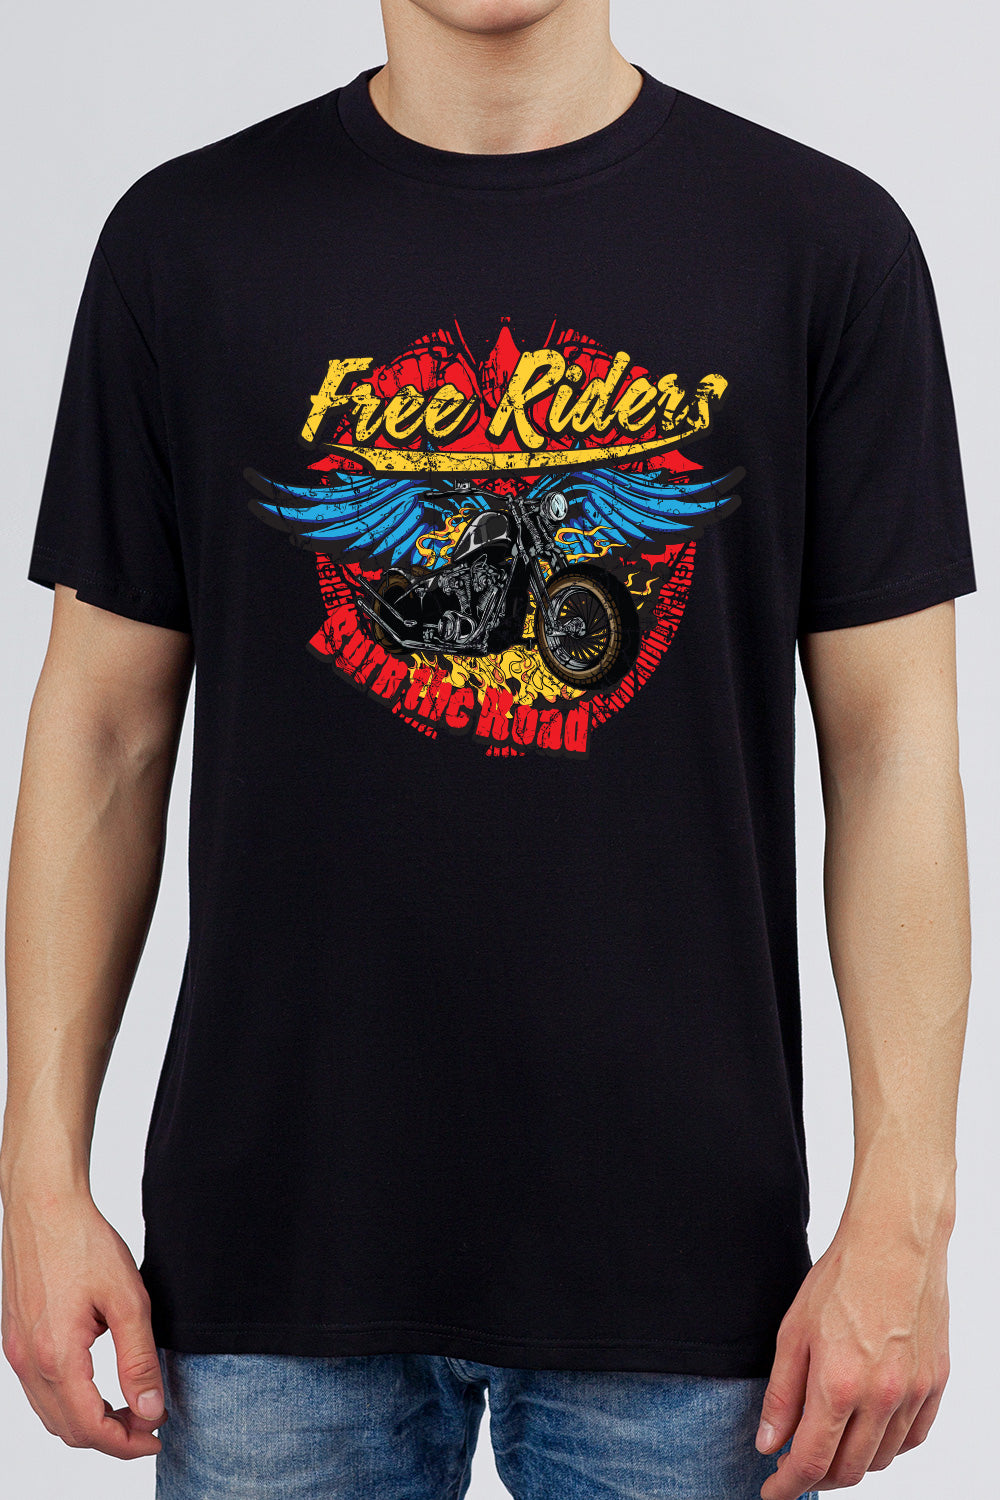 Free Riders - Biker Gang Retro Printed Black Tee